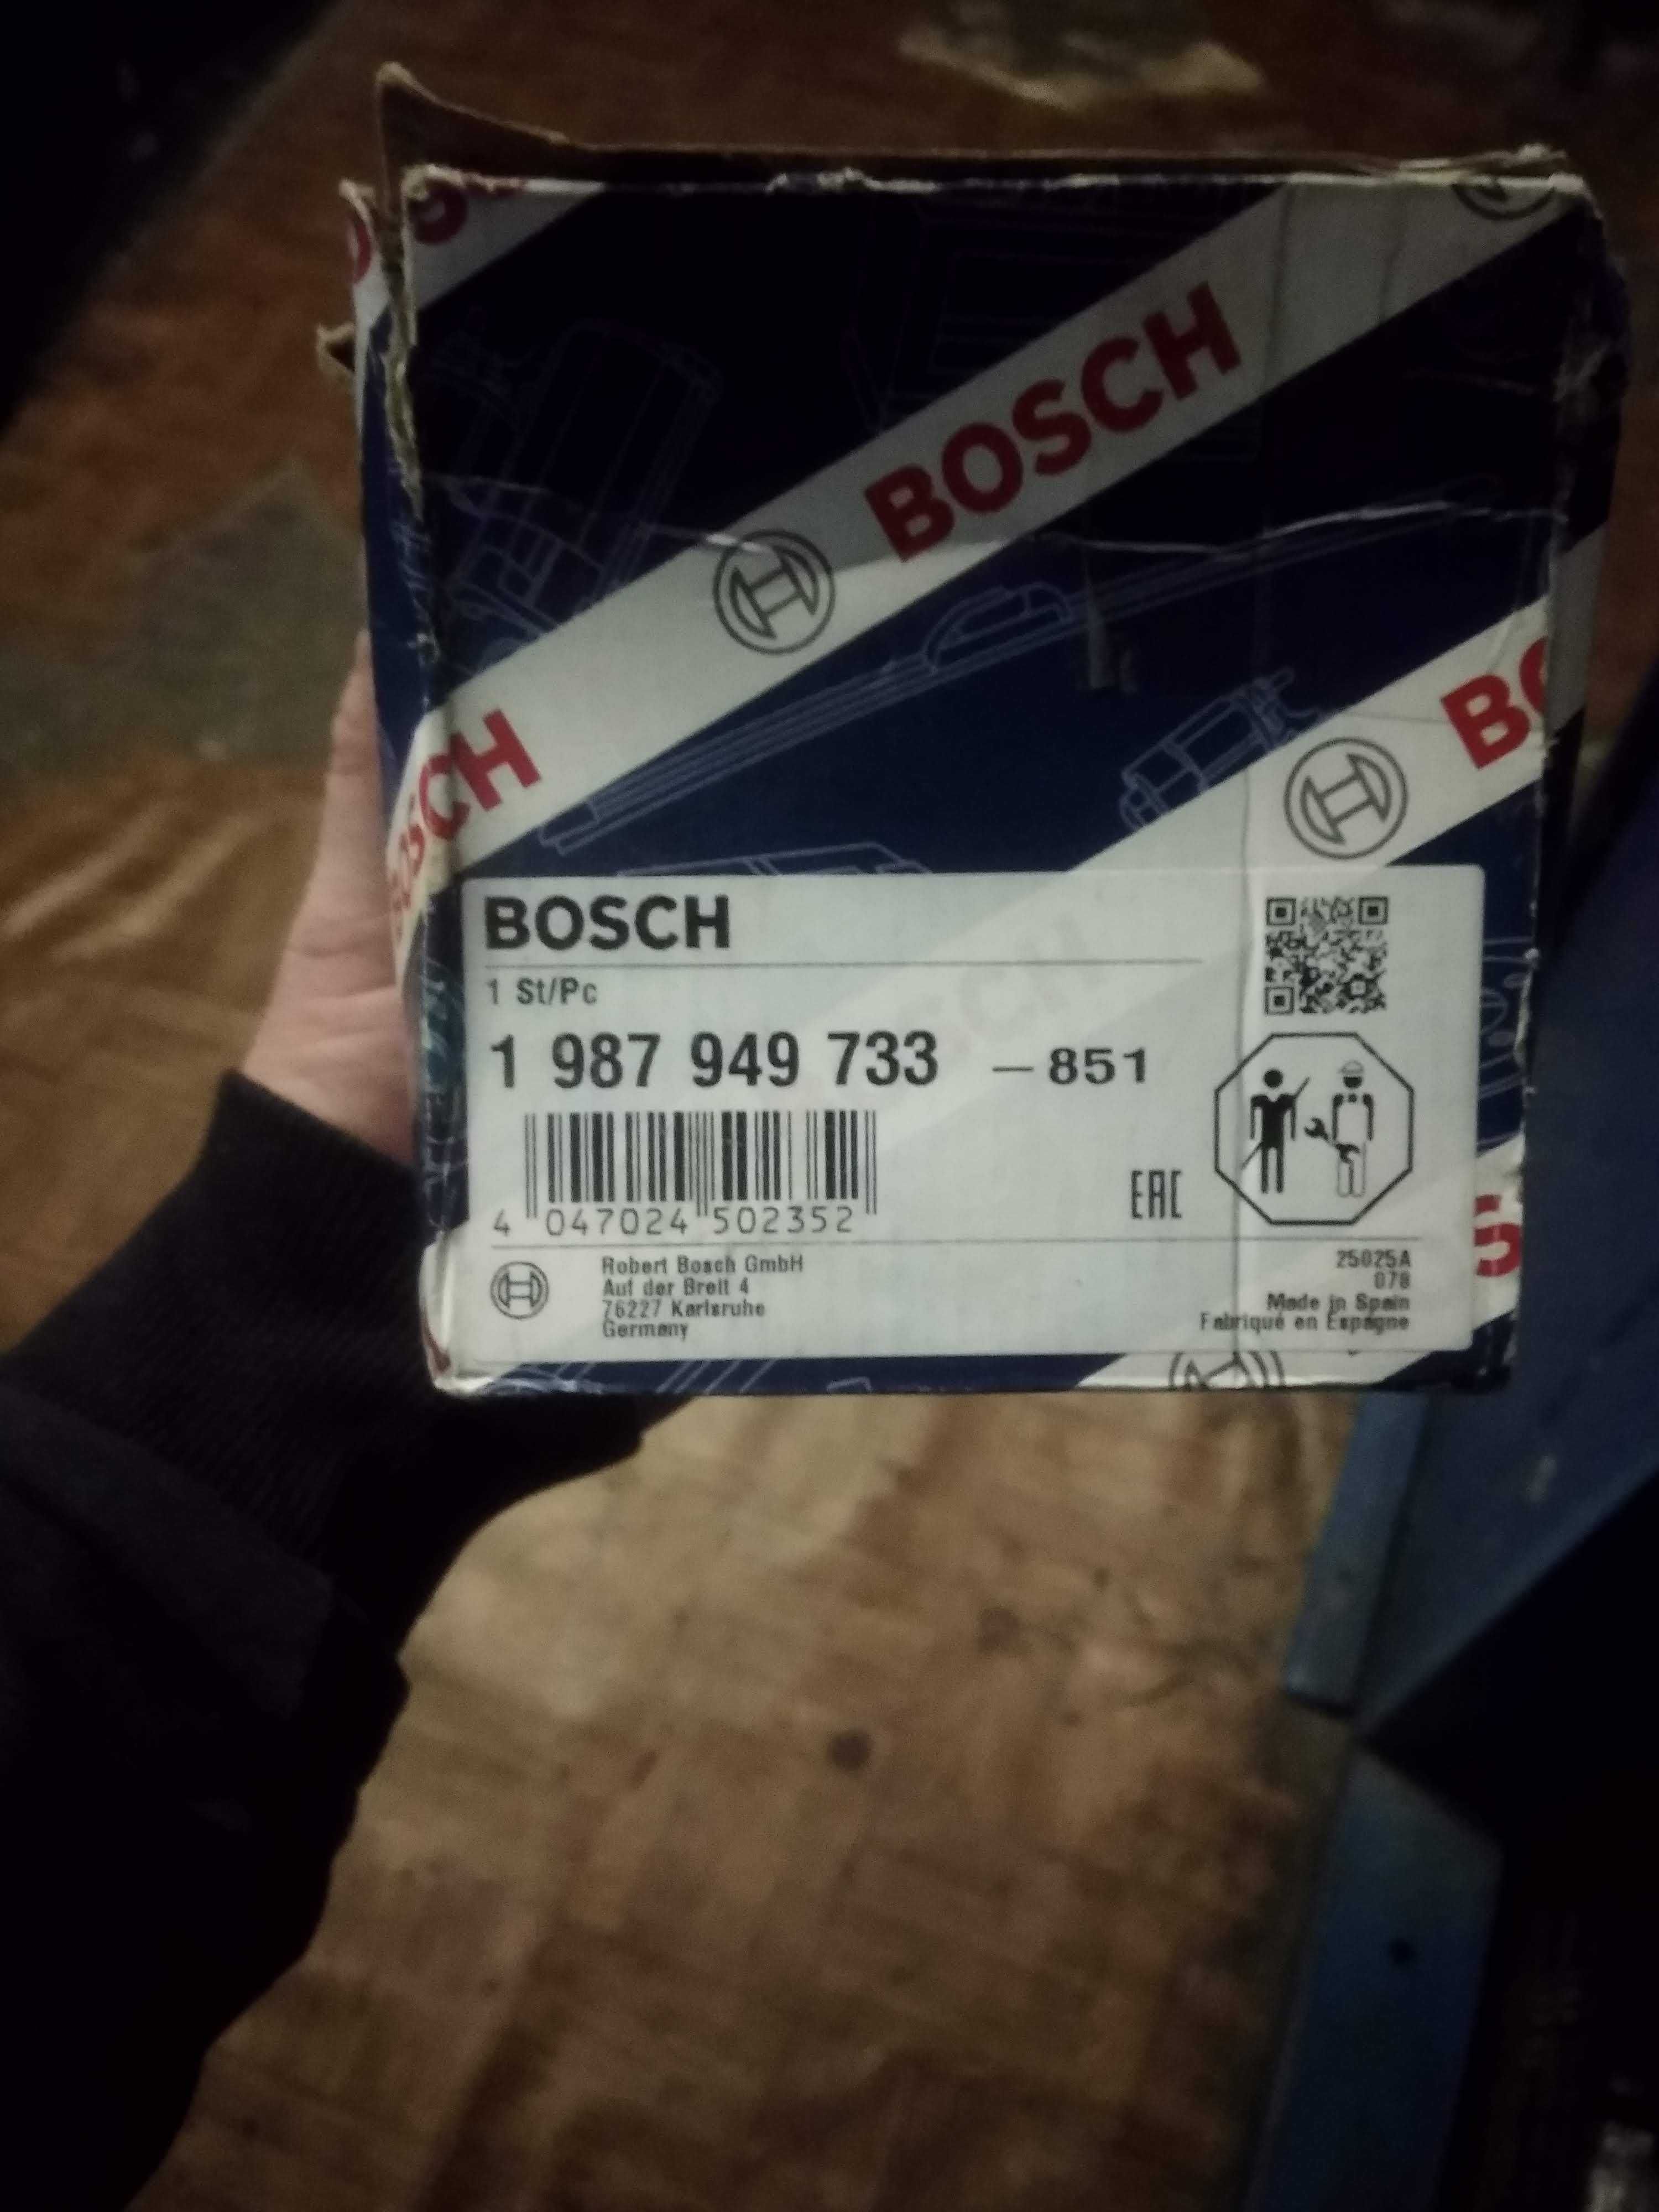 1987949733 Bosch помпа водяная (насос охлаждения